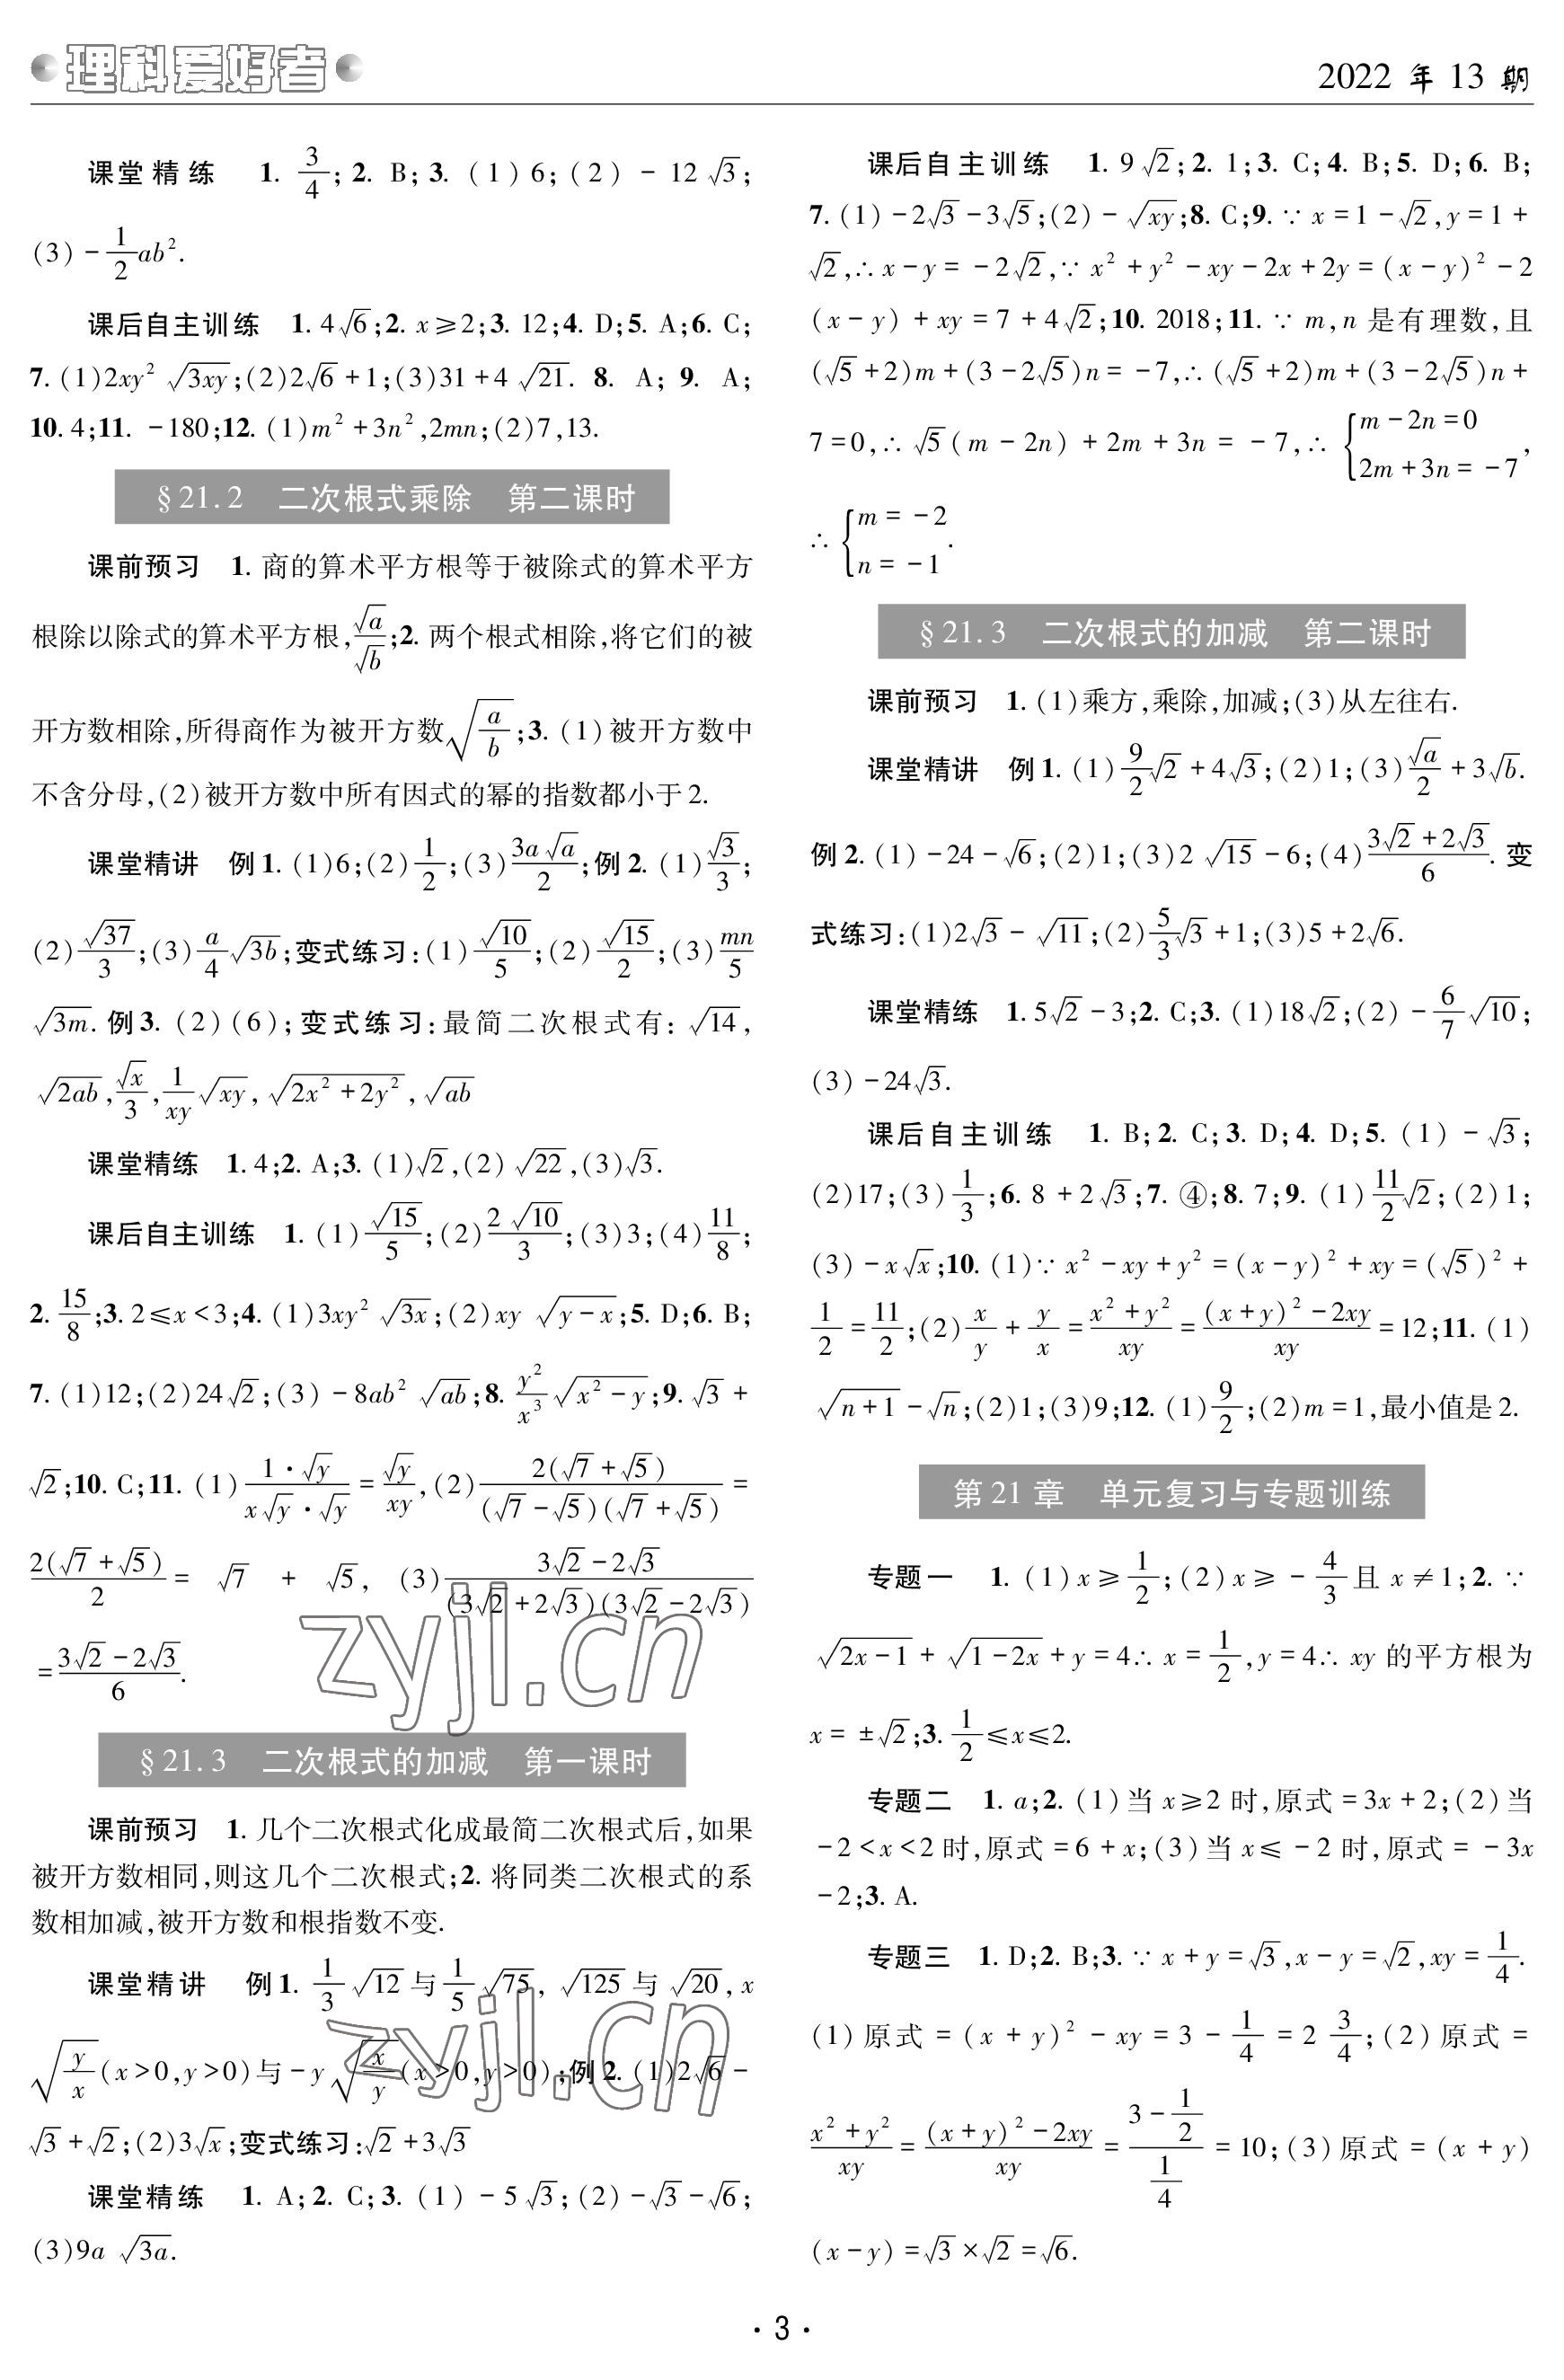 2022年理科爱好者九年级数学全一册华师大版第13期 参考答案第2页